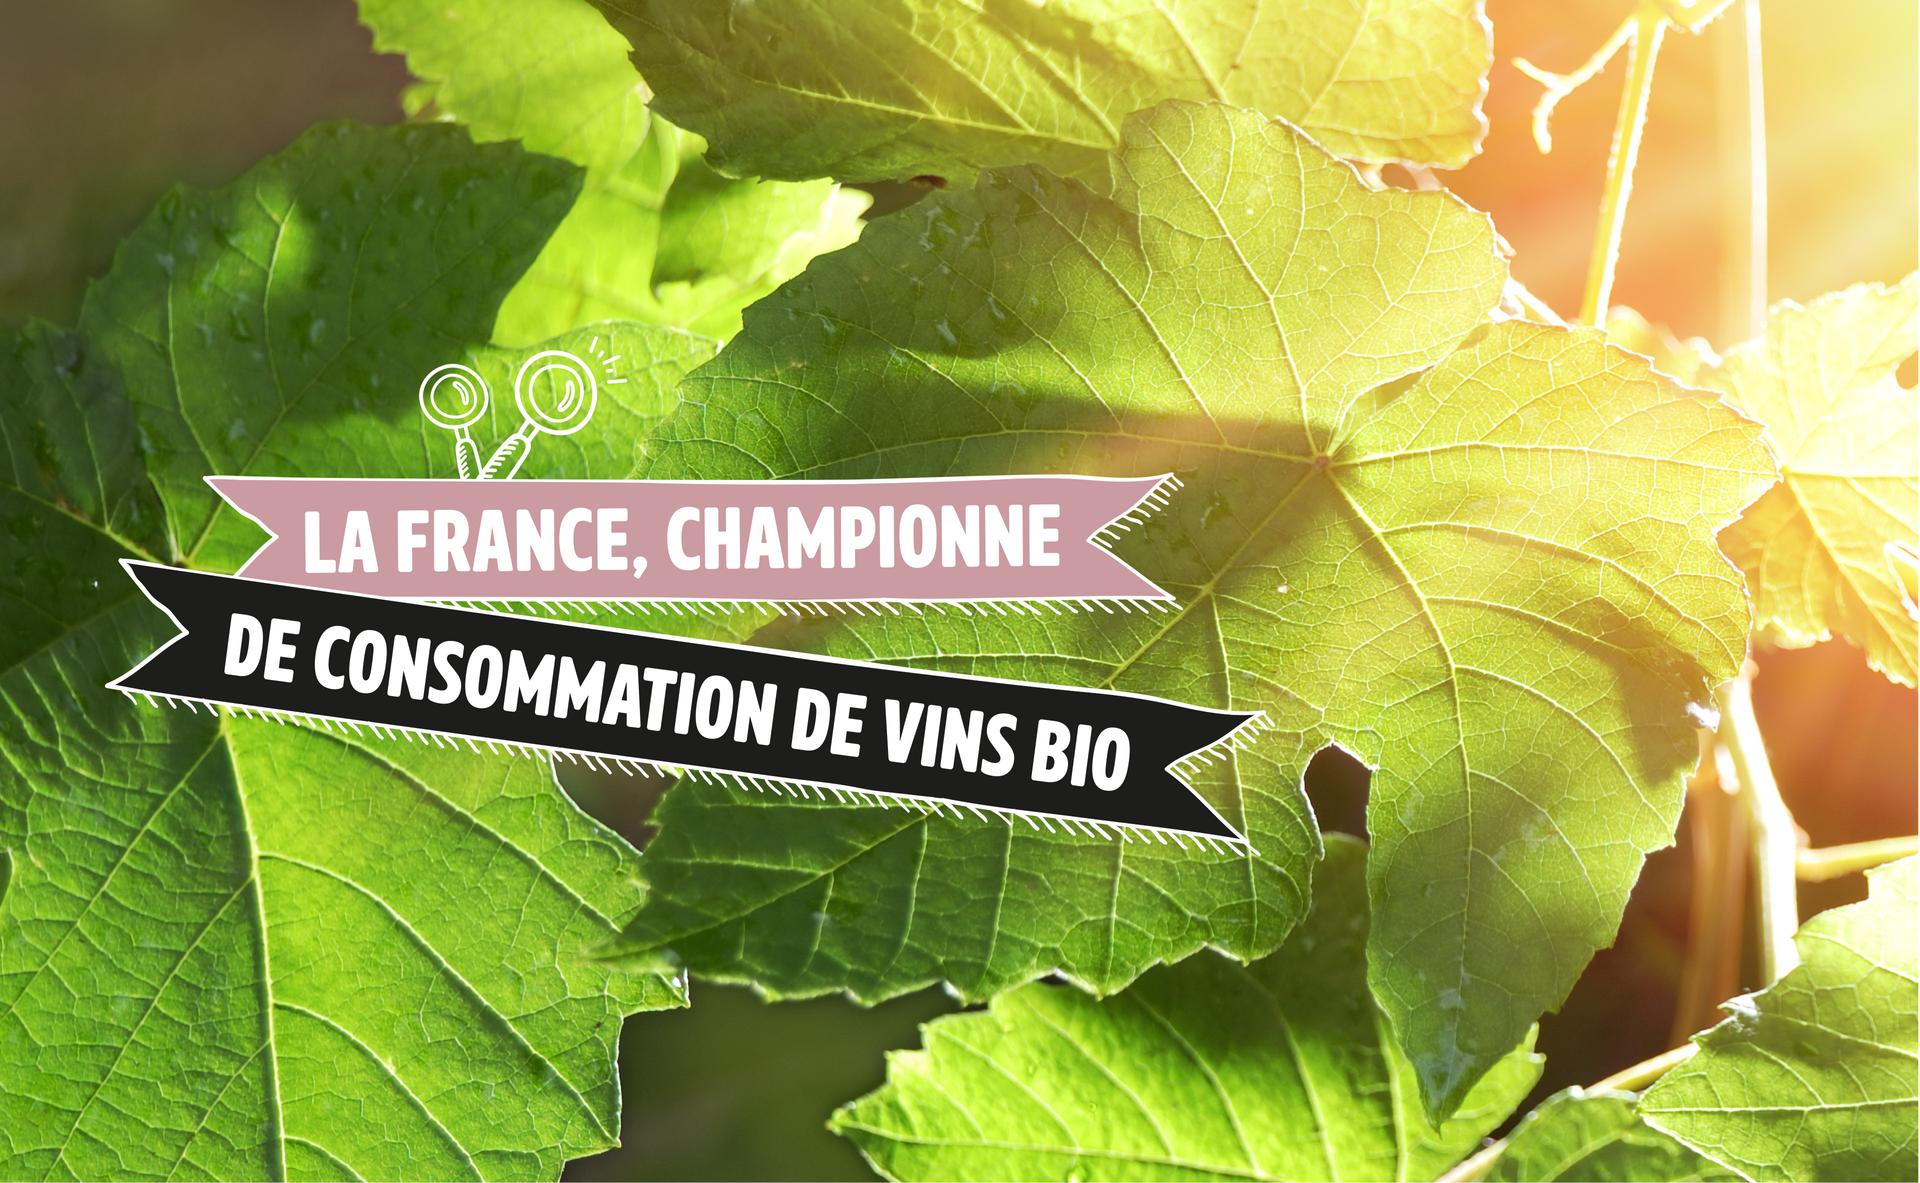 La France, championne du monde de consommation de vins bio